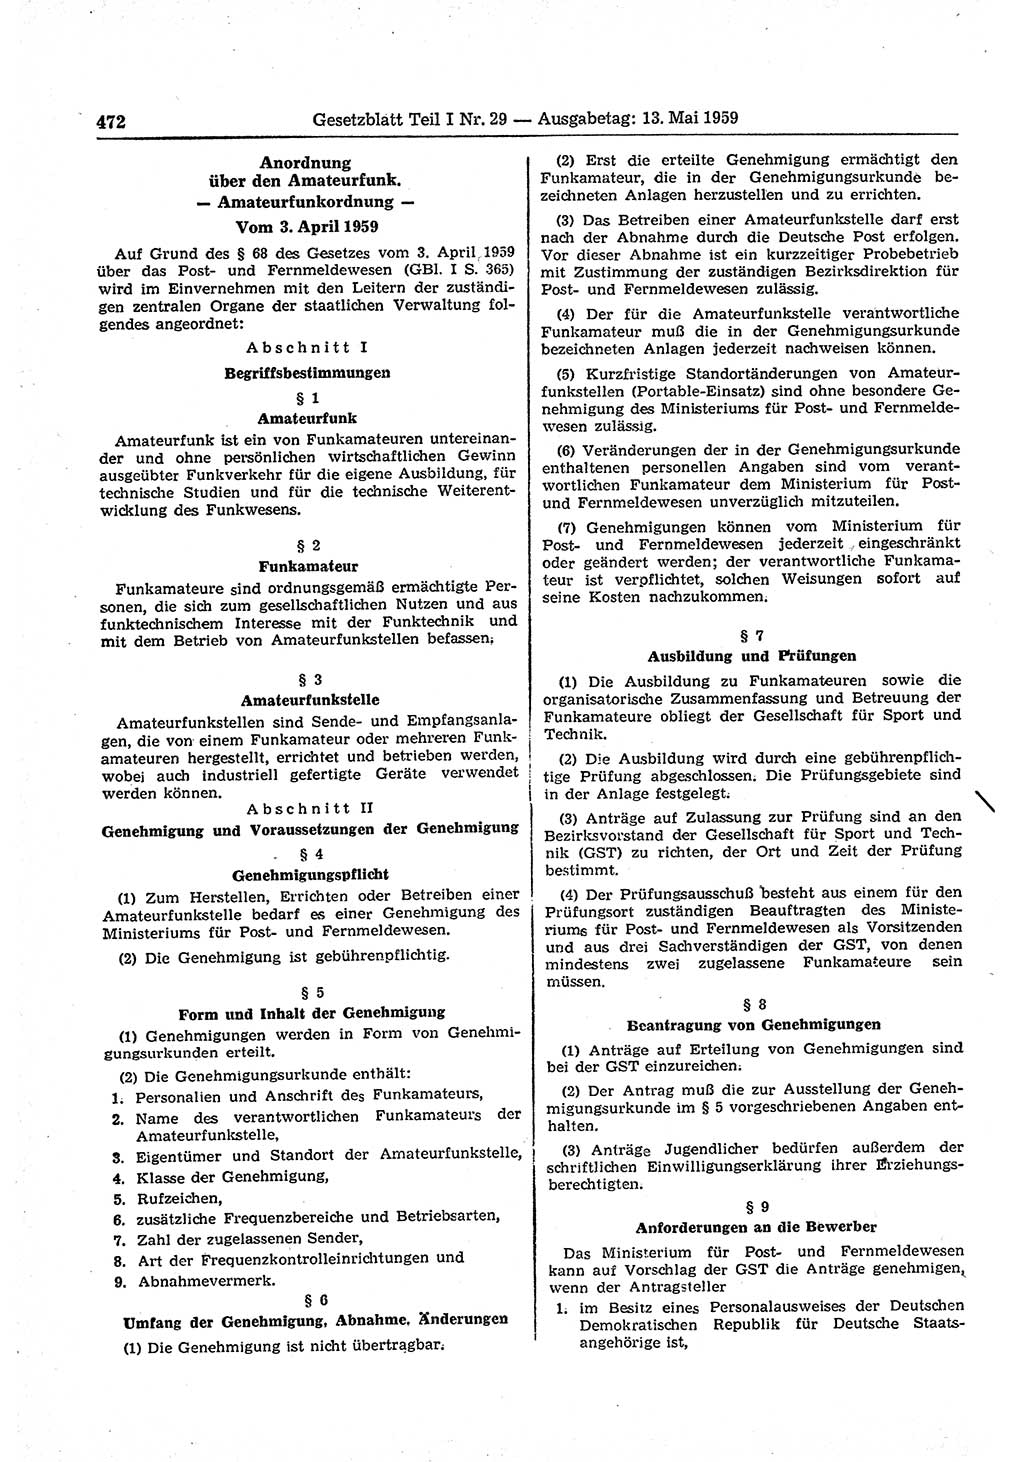 Gesetzblatt (GBl.) der Deutschen Demokratischen Republik (DDR) Teil Ⅰ 1959, Seite 472 (GBl. DDR Ⅰ 1959, S. 472)